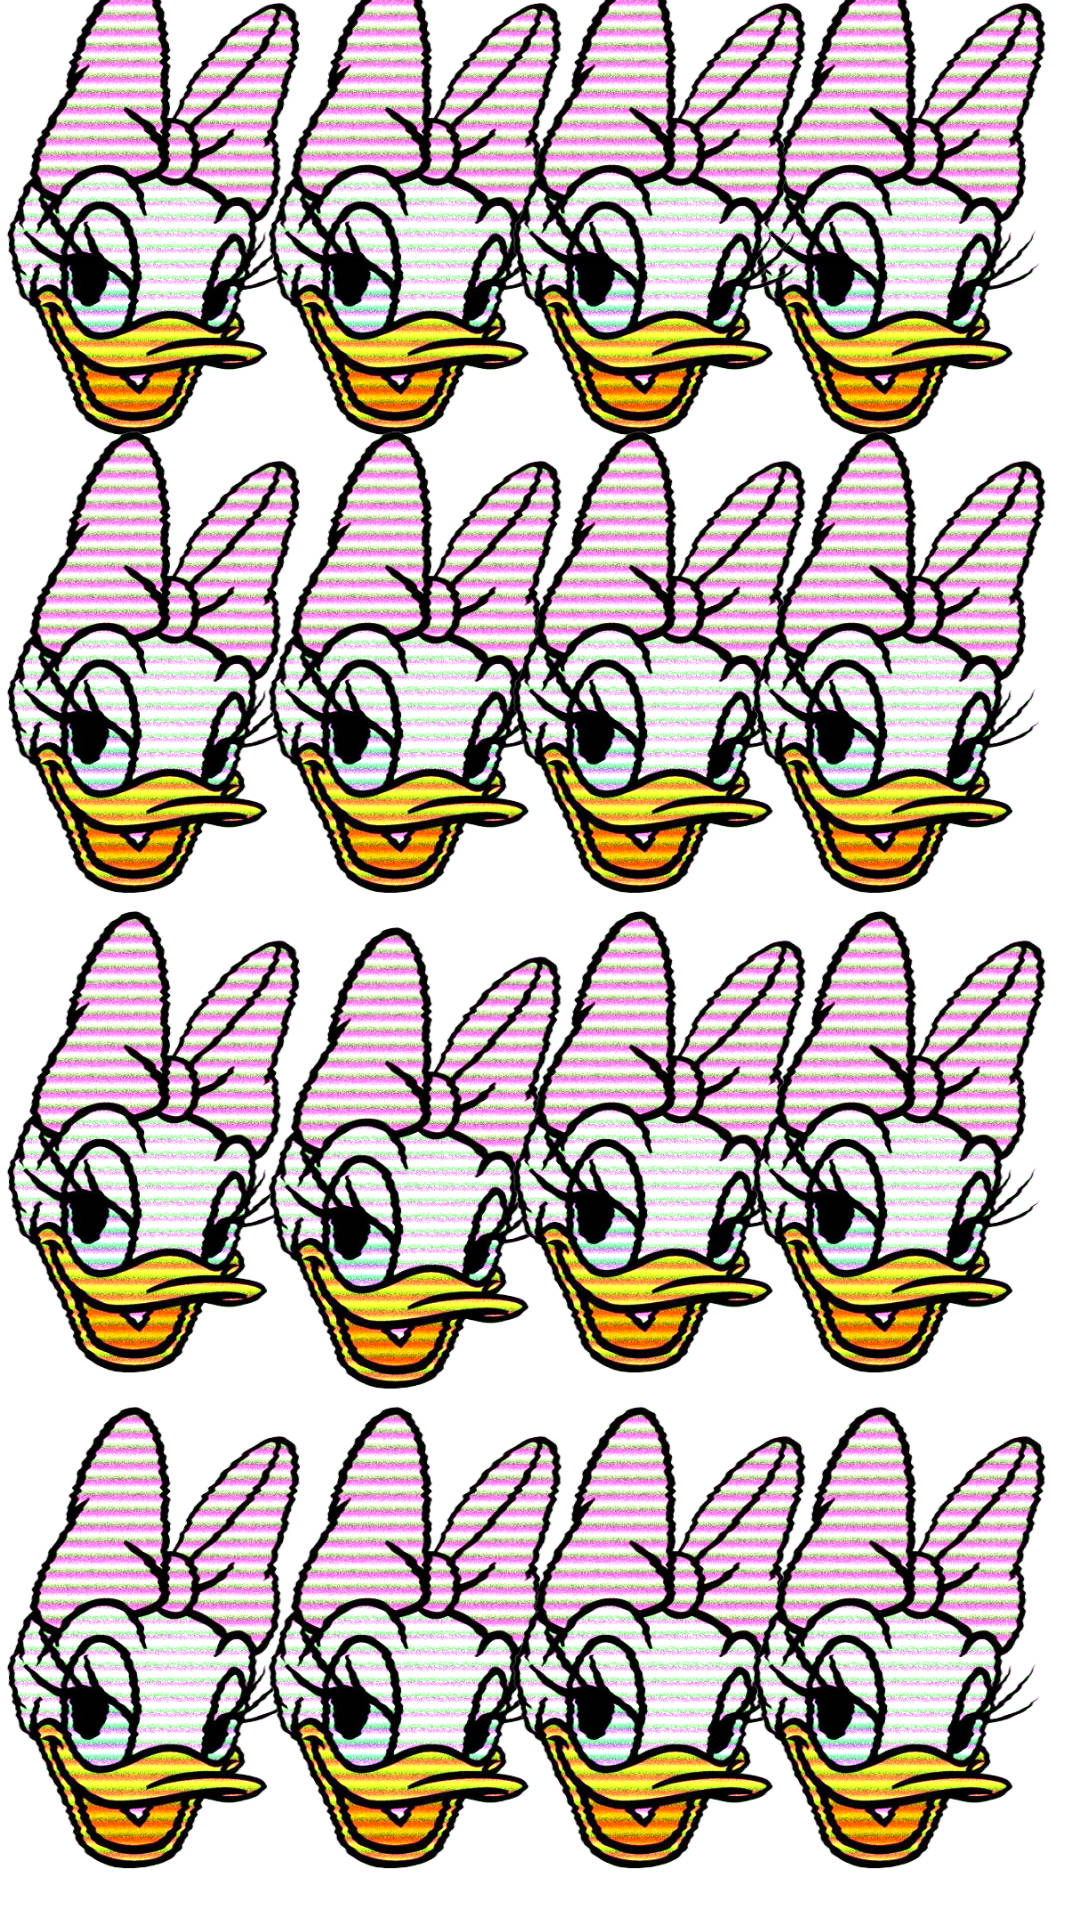 Retrodaisy Duck Heads: Retro Daisy Ankahuvuden. Wallpaper